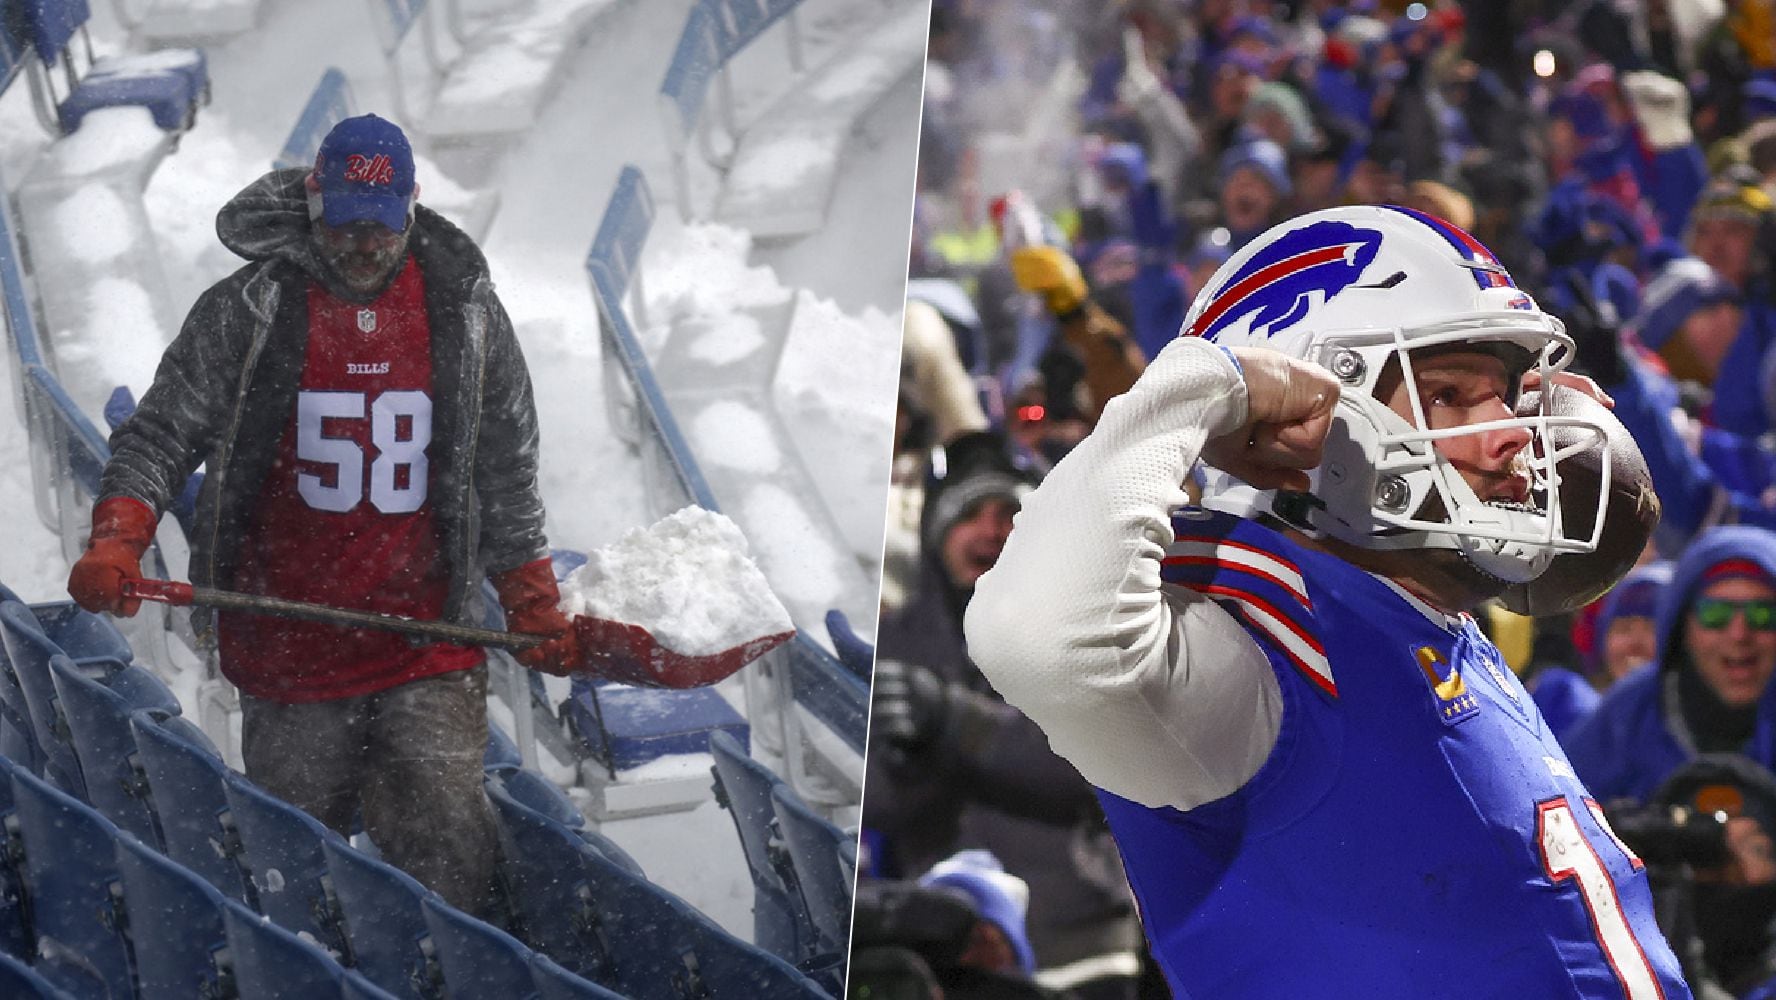 (VIDEO) Así fue el juego de los Bills: Con nieve al aire y asientos perdidos por tormenta invernal